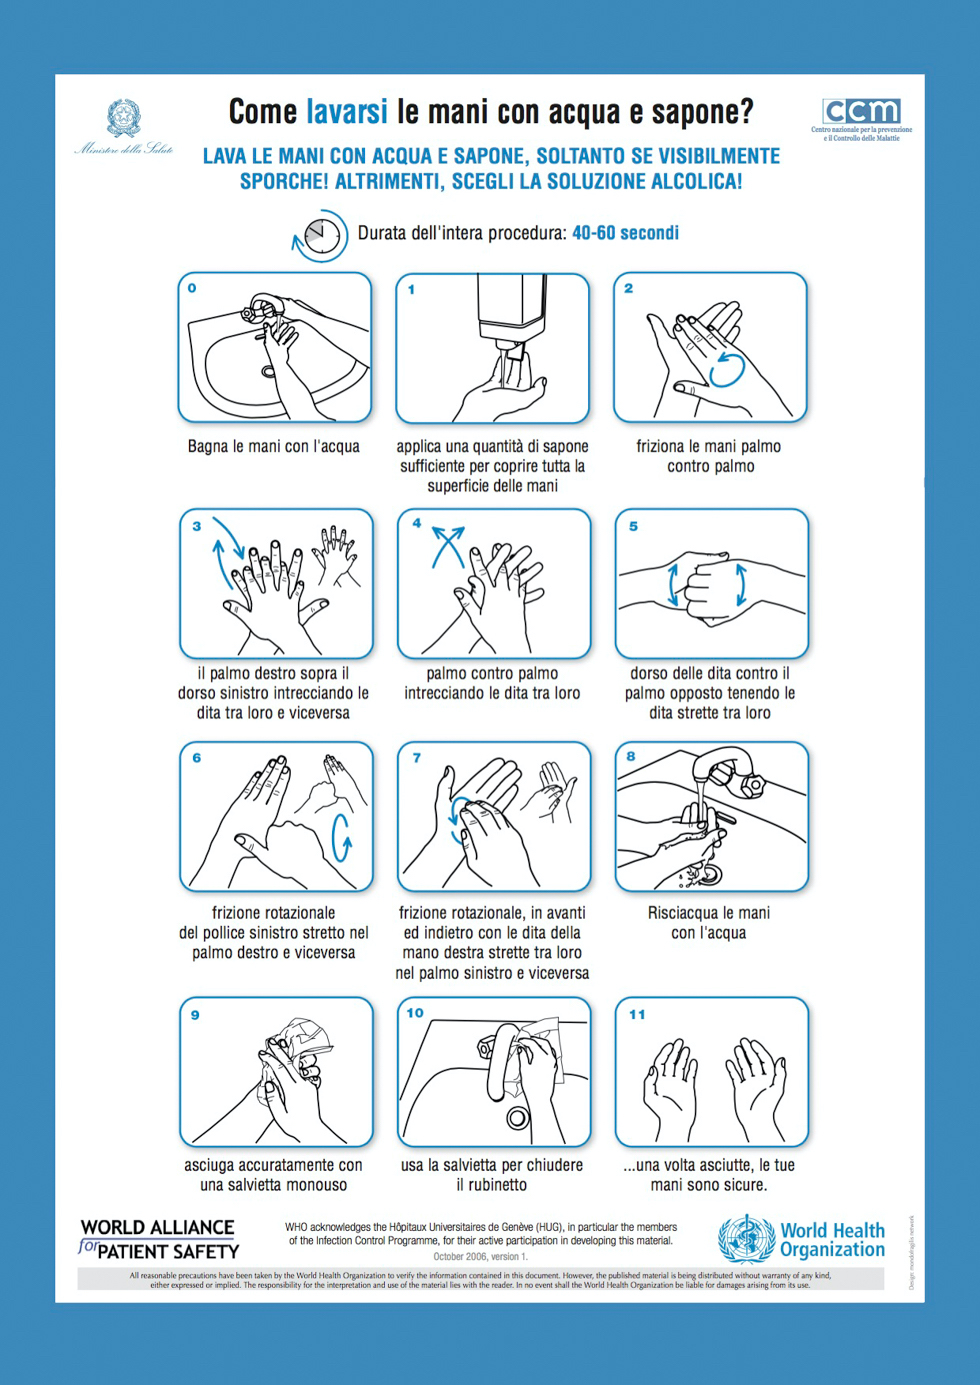 Le istruzioni per lavarsi le mani